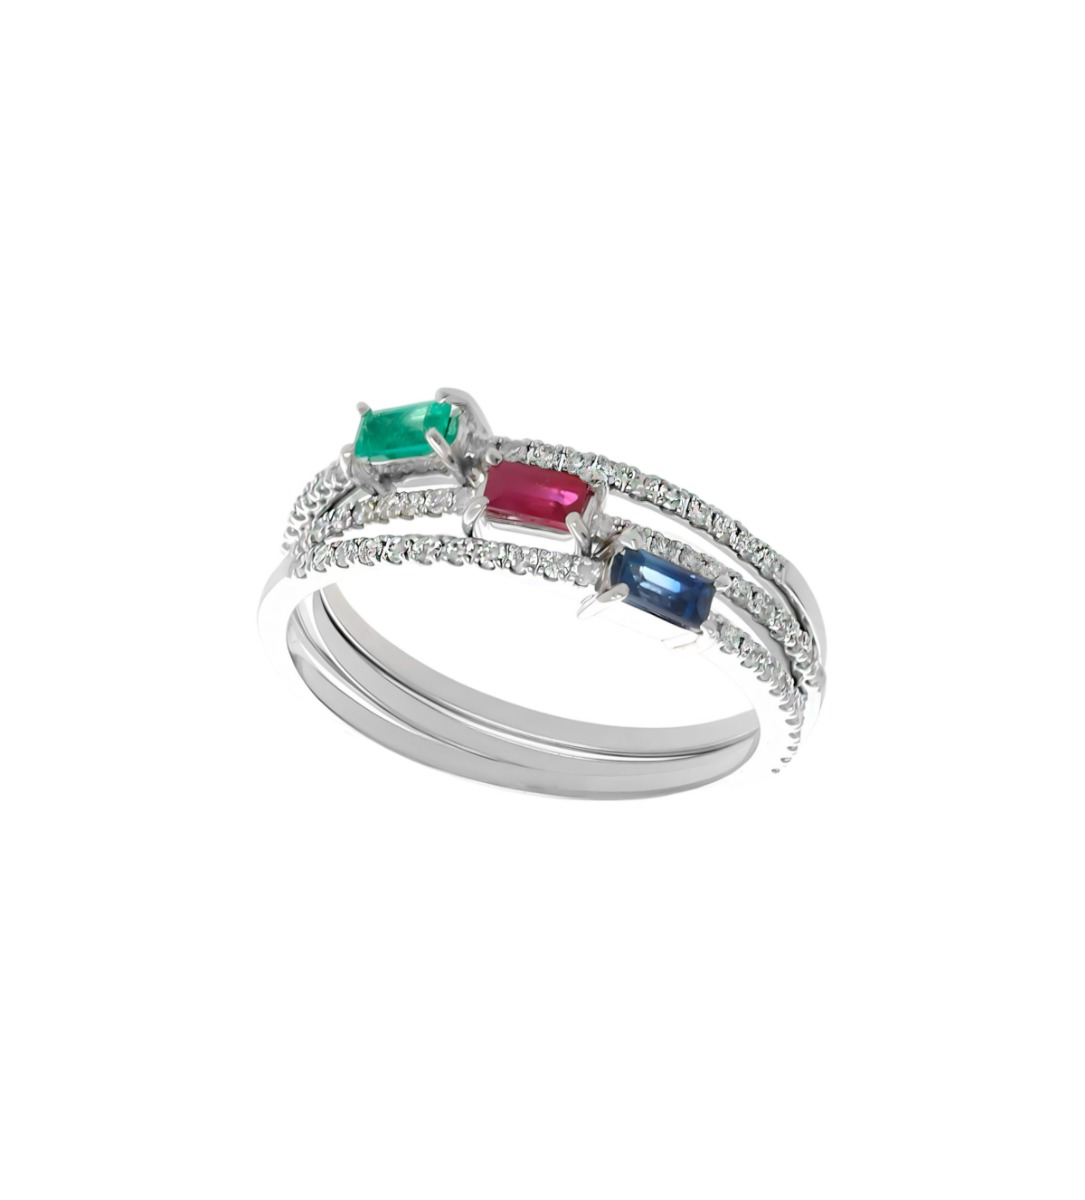 anillo oro blanco y diamantes con rubi esmeralda y zafiro, 3 anillos individuales para formar una joya única, foto 2